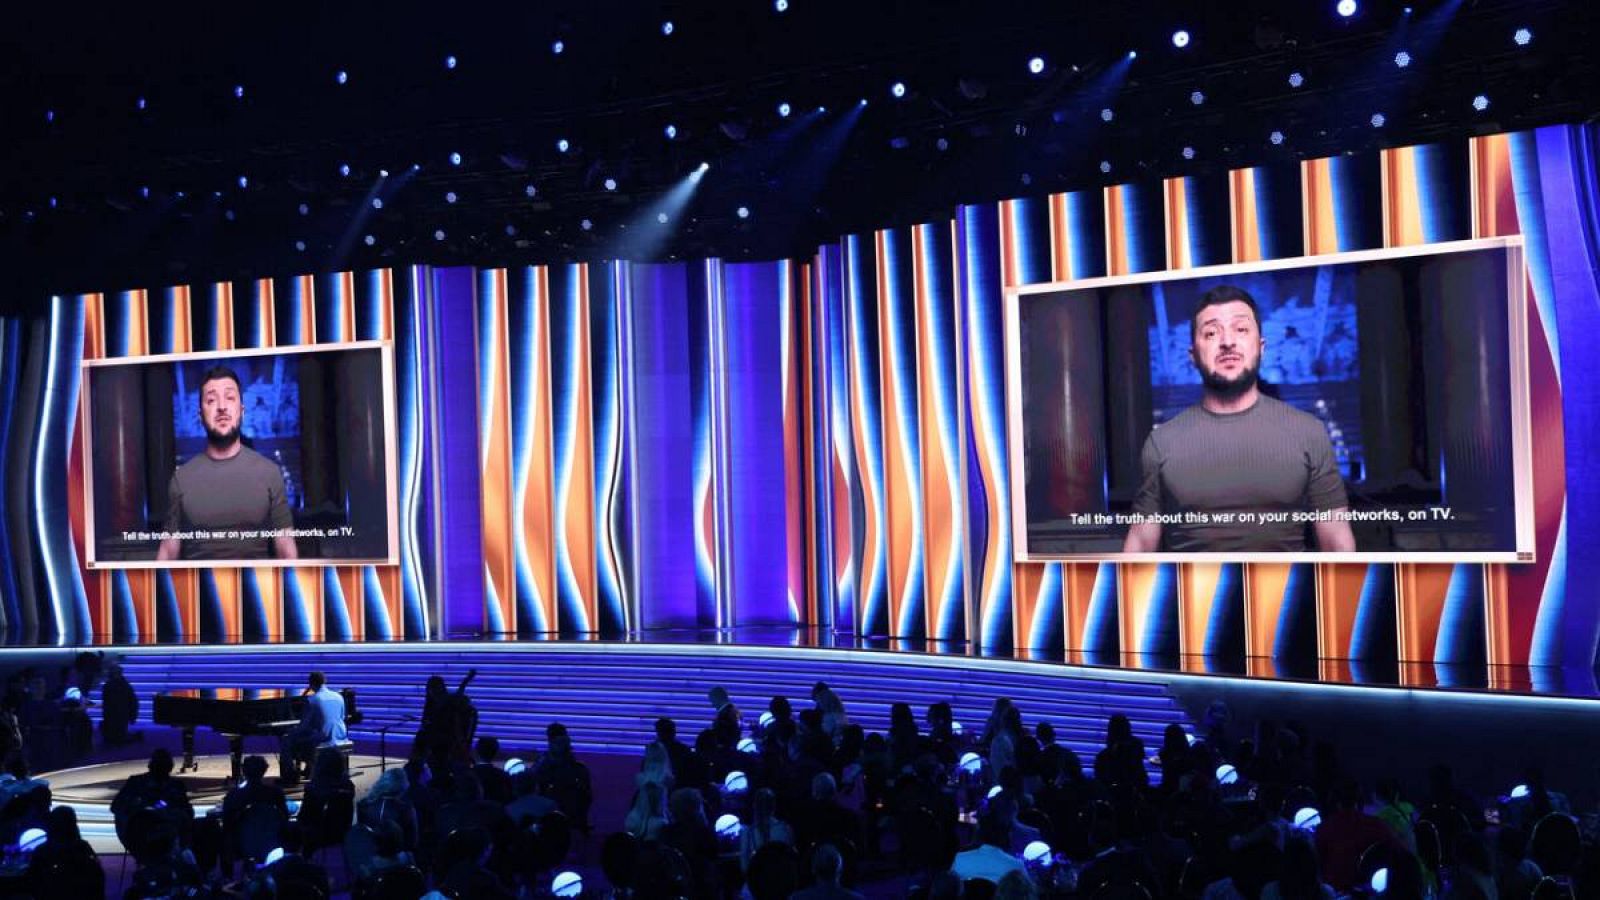 El presidente de Ucrania, Volodímyr Zelenski, se dirige a la audiencia del 64º espectáculo anual de los premios Grammy sobre la invasión de Ucrania por parte de Rusia a través de un video.